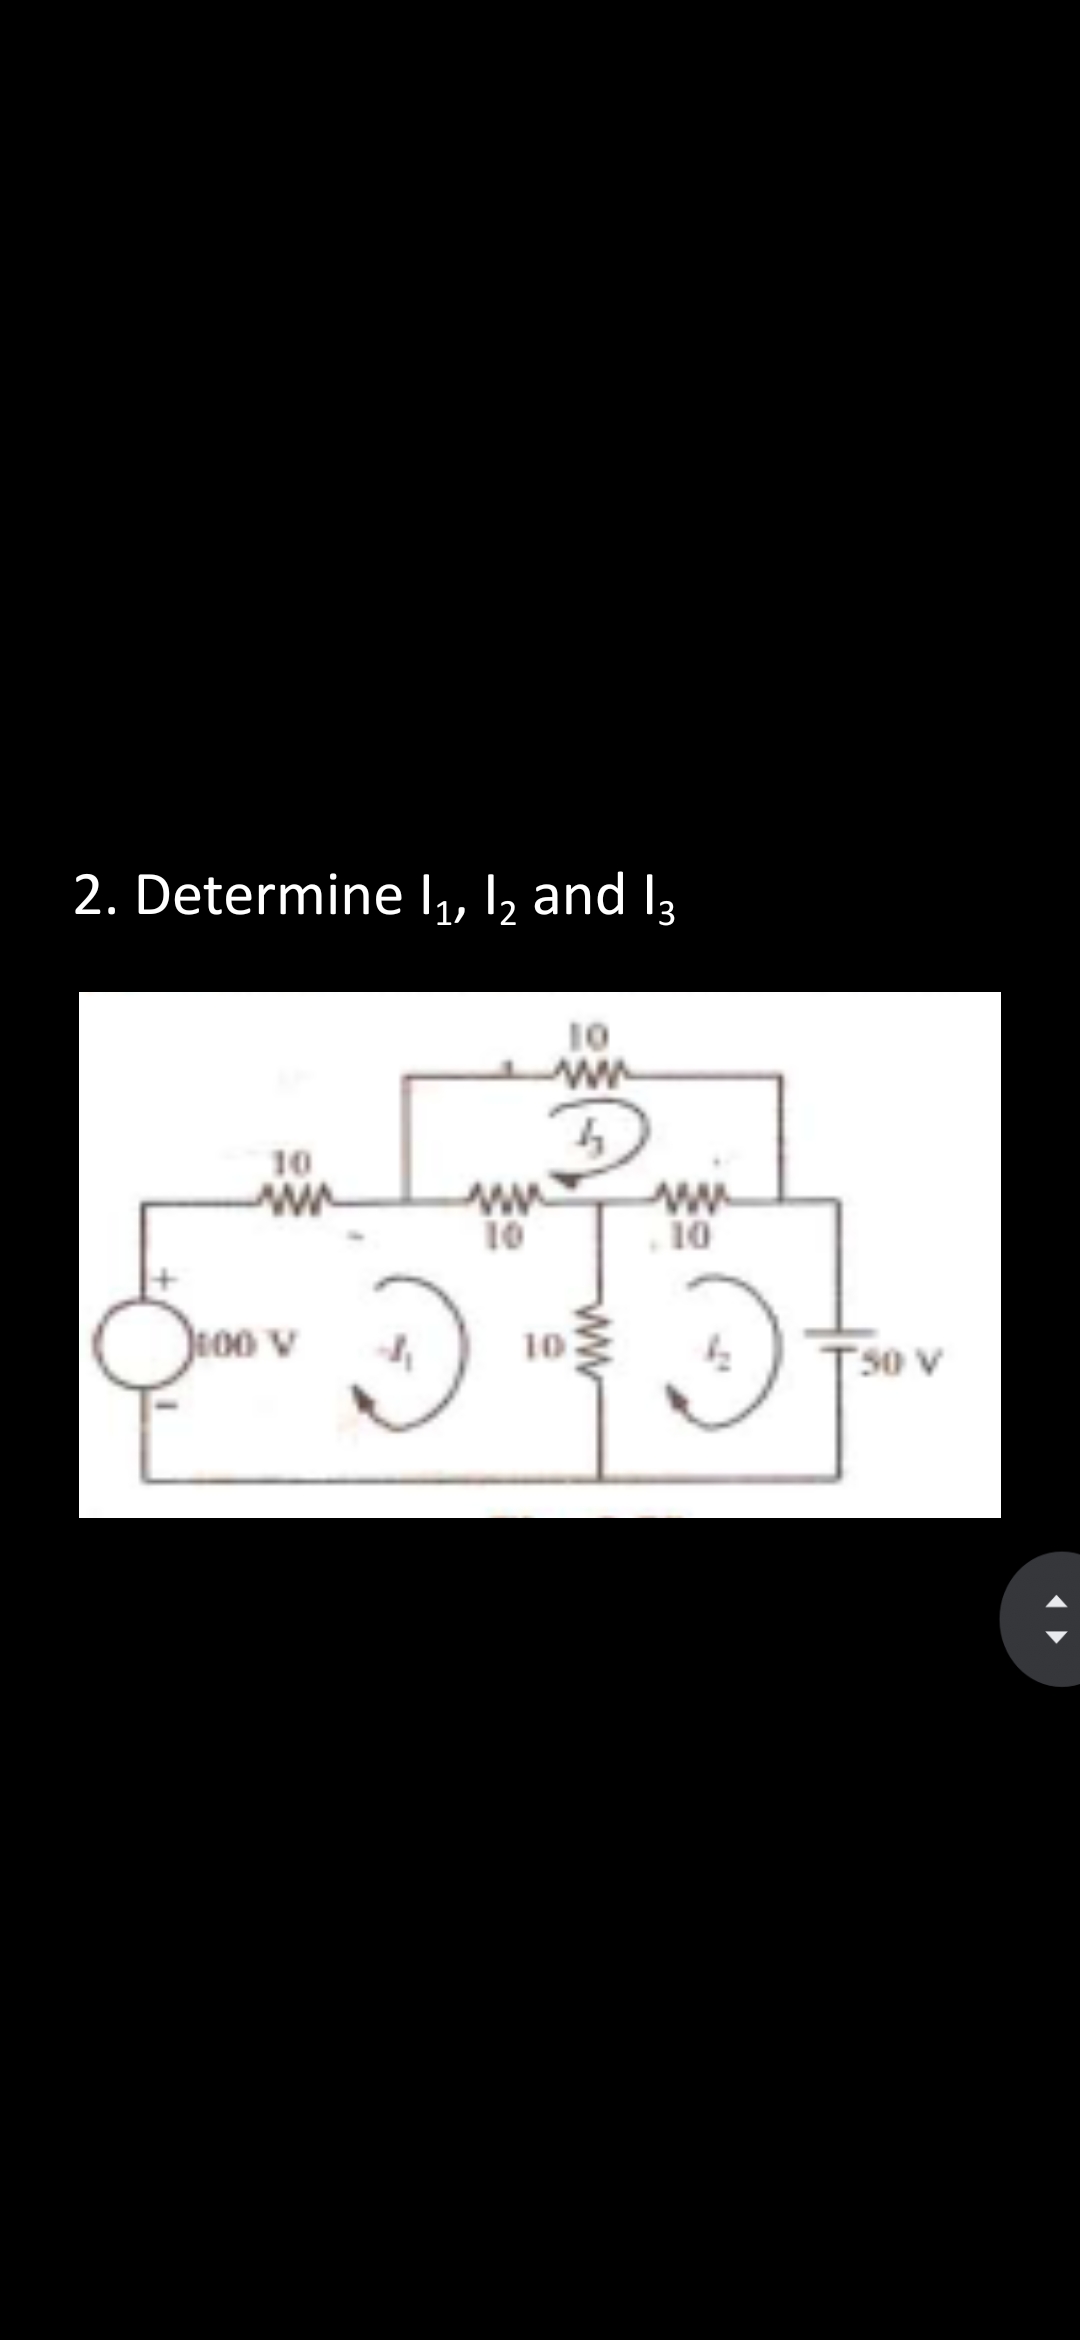 2. Determine 1₁, 12 and 13
10
www
4
10
www
100 V
3
www
10
10
ww
www
10
50 V